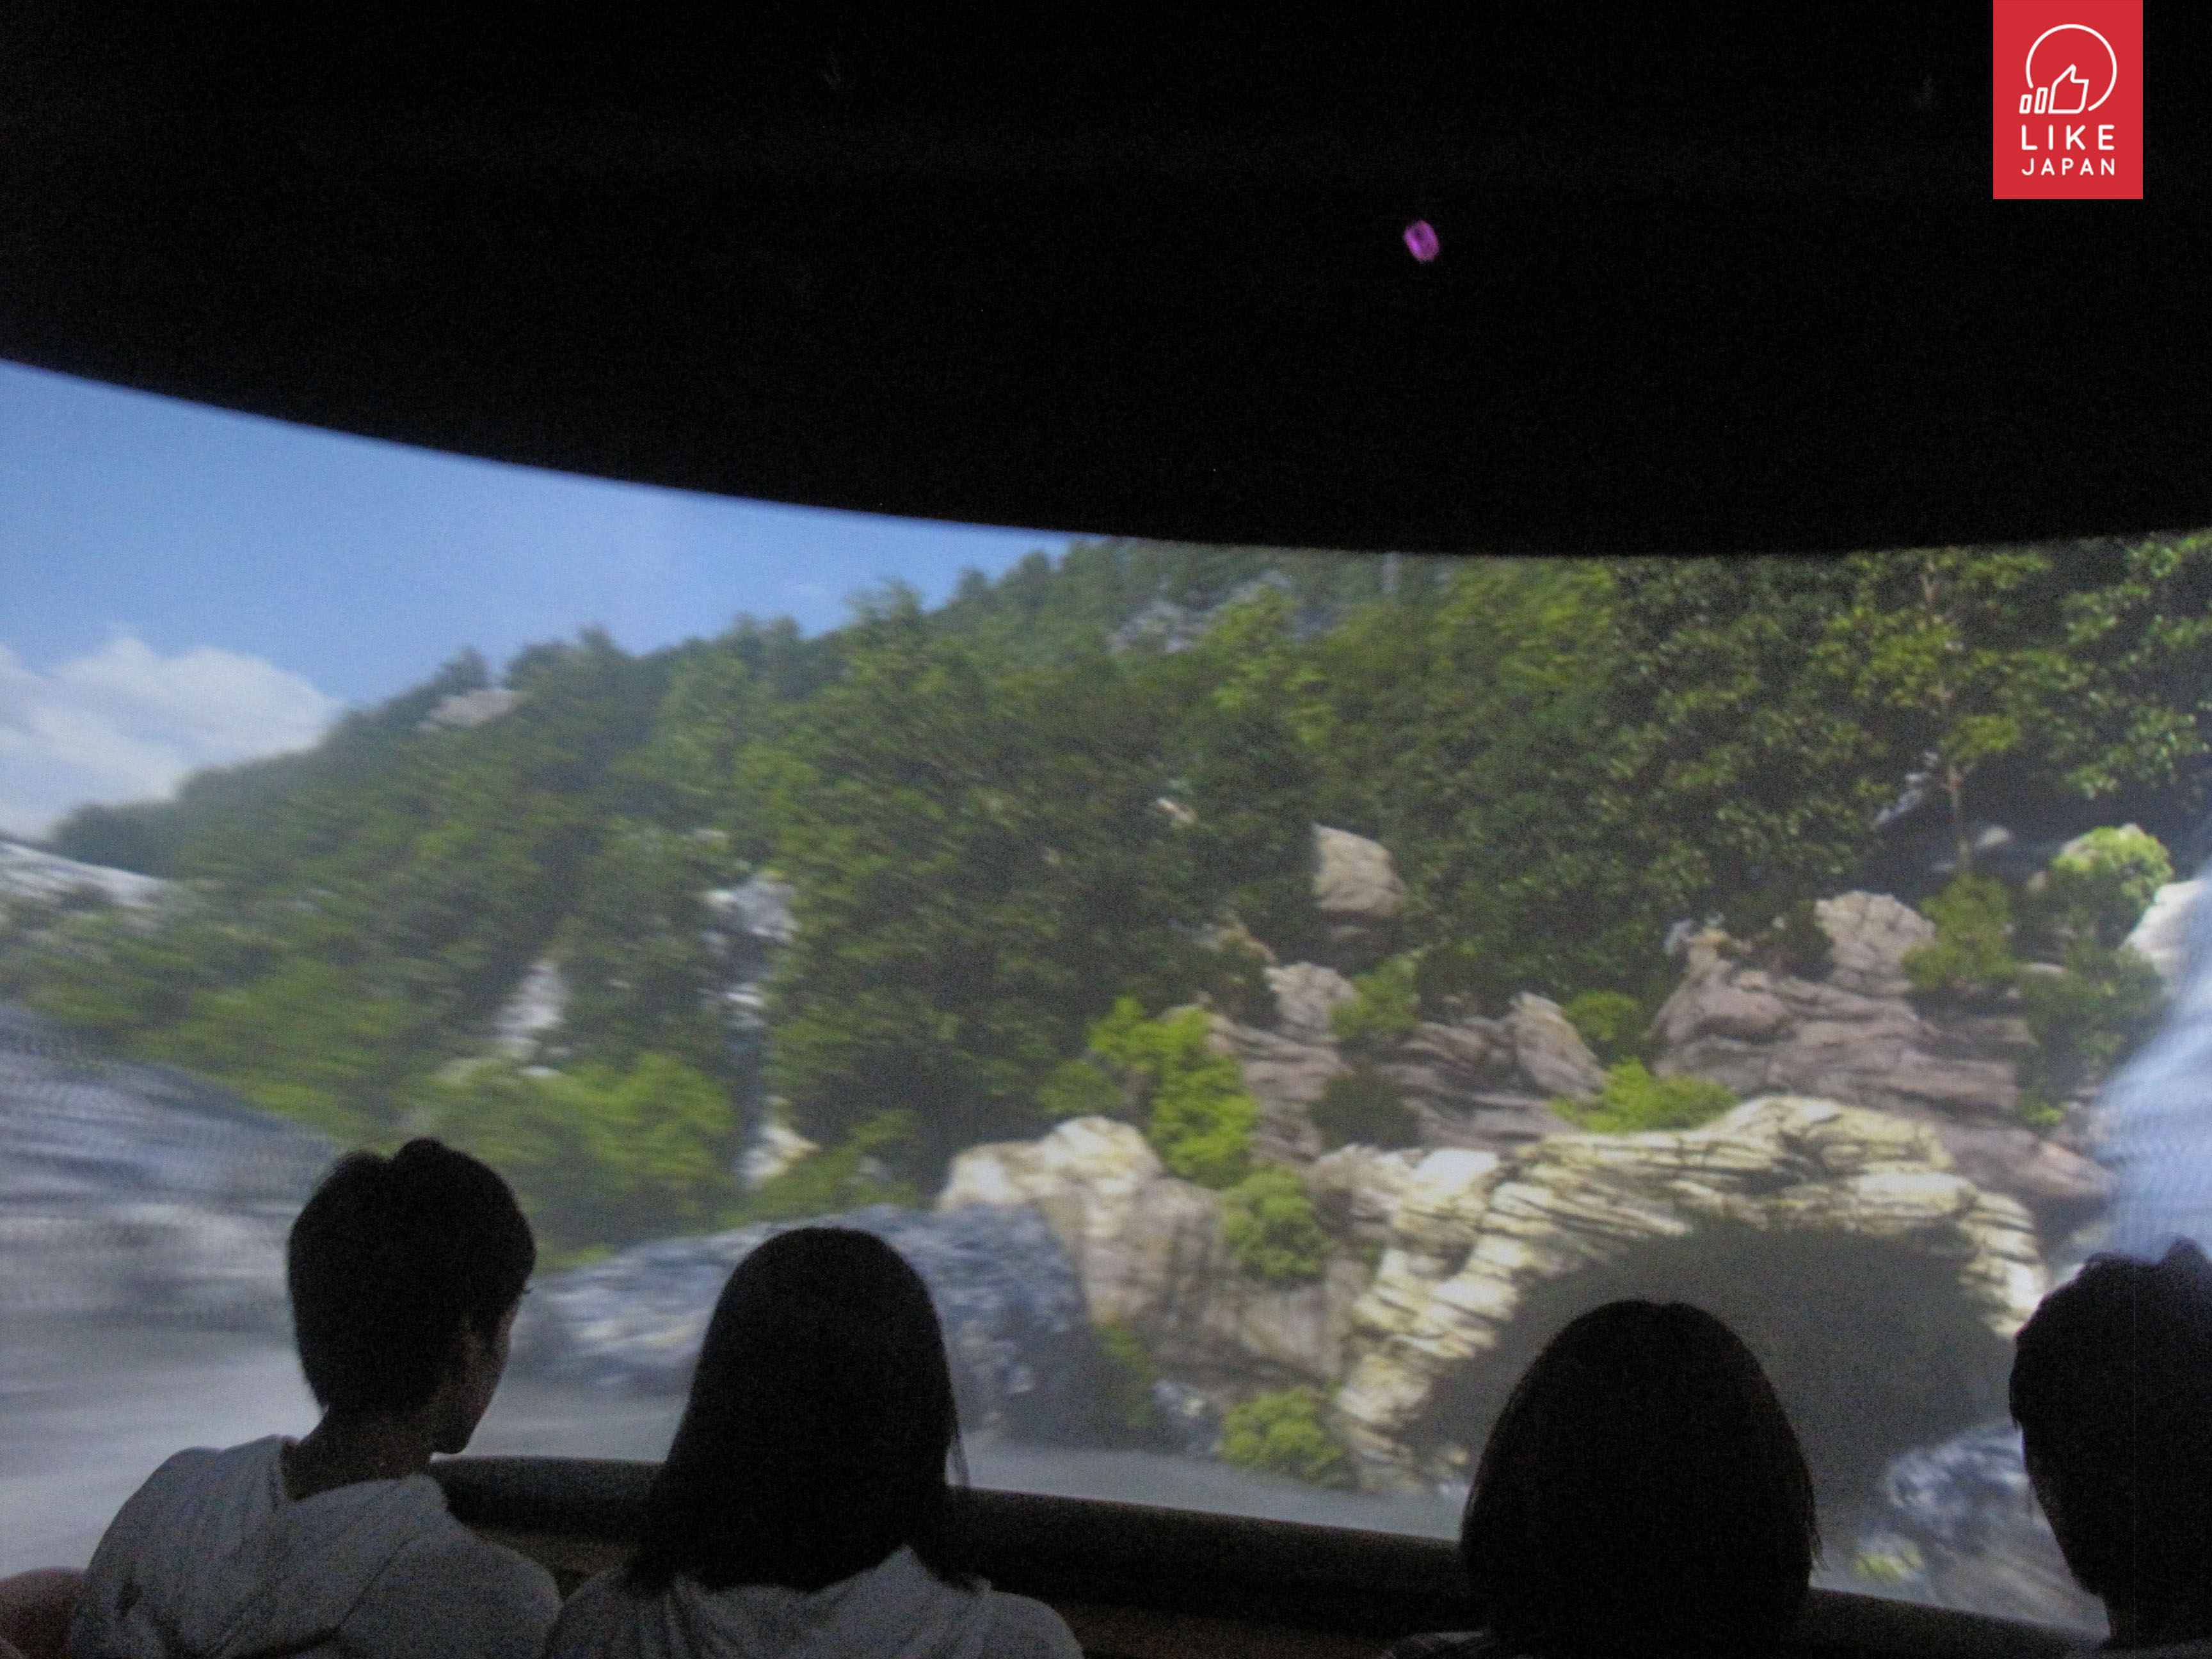 日本最大型電子室內遊樂場-JOYPOLIS 好似去左未來世界咁！